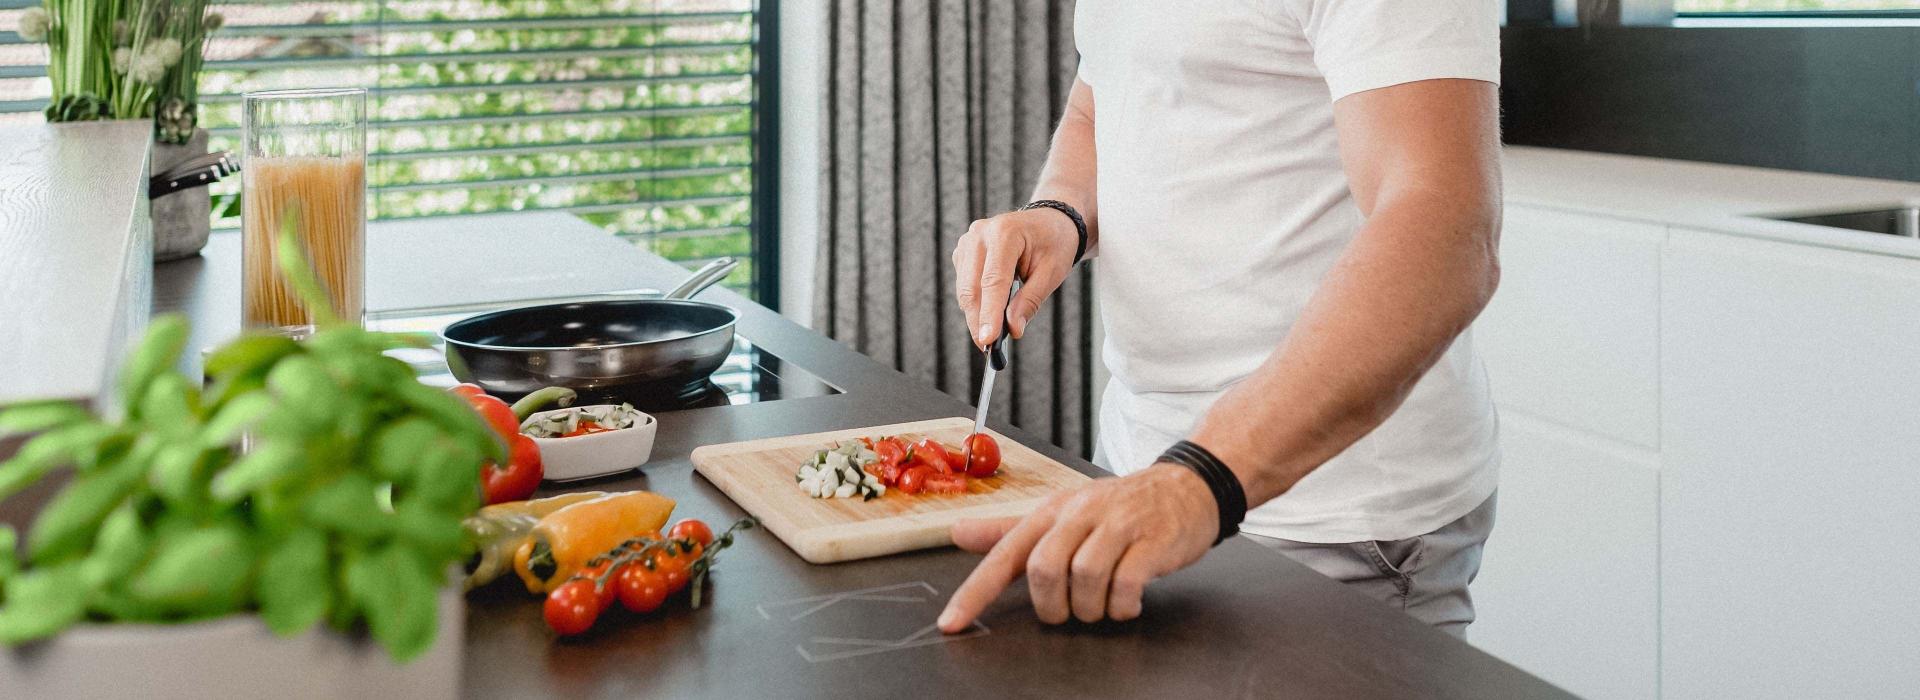 Mann in Küche beim Kochen mit Touch Surface auf Arbeitsfläche